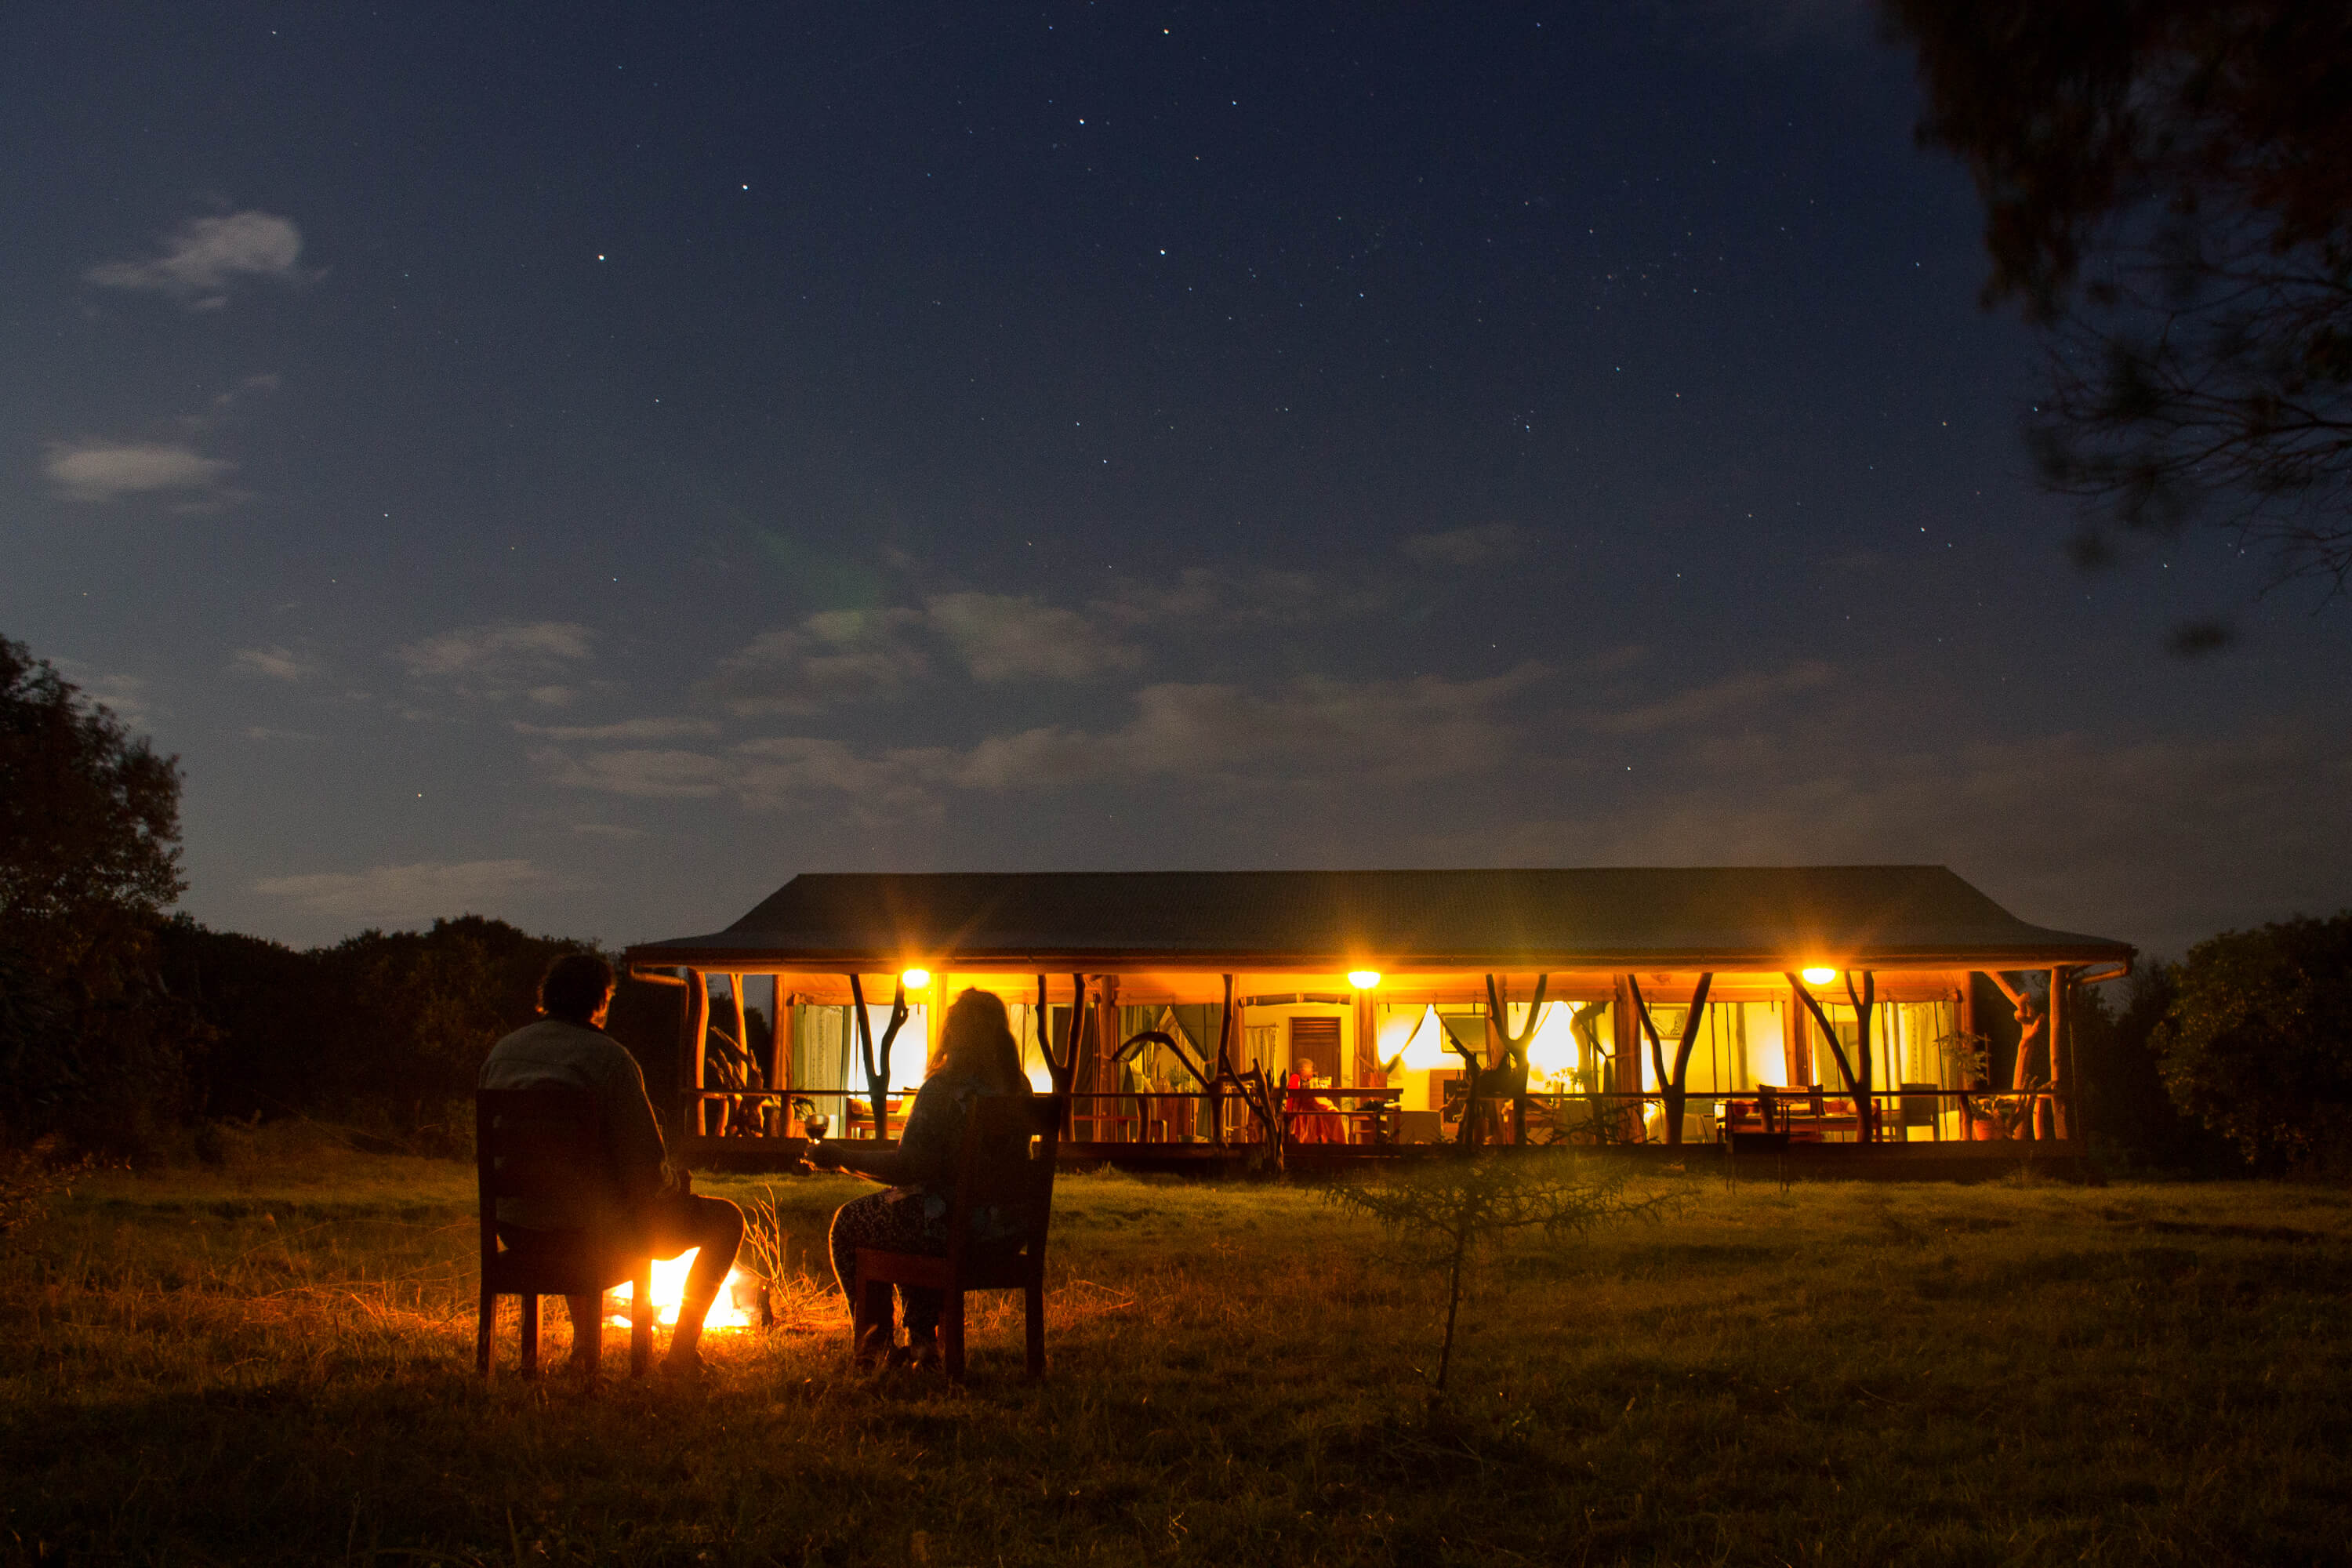 Ol Pejeta Safari Cottages, in Ol Pejeta, Kenya